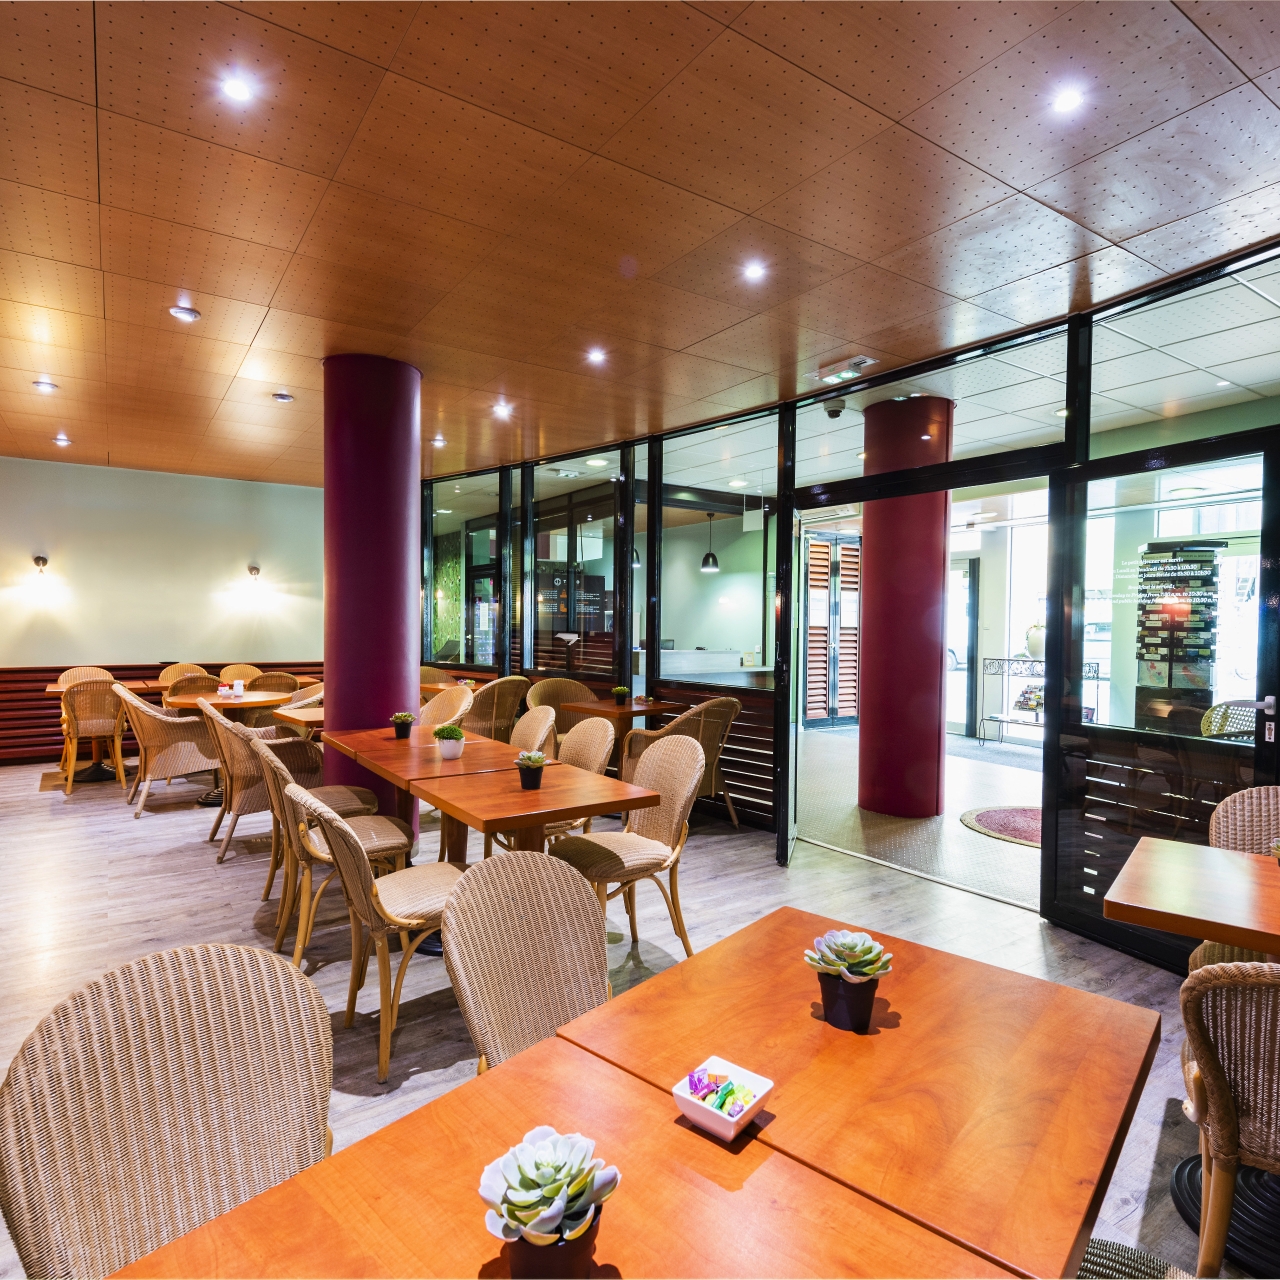 Teneo Apparthotel Bordeaux - Gare Saint Jean Residence Hoteliere chez HRS  avec services gratuits